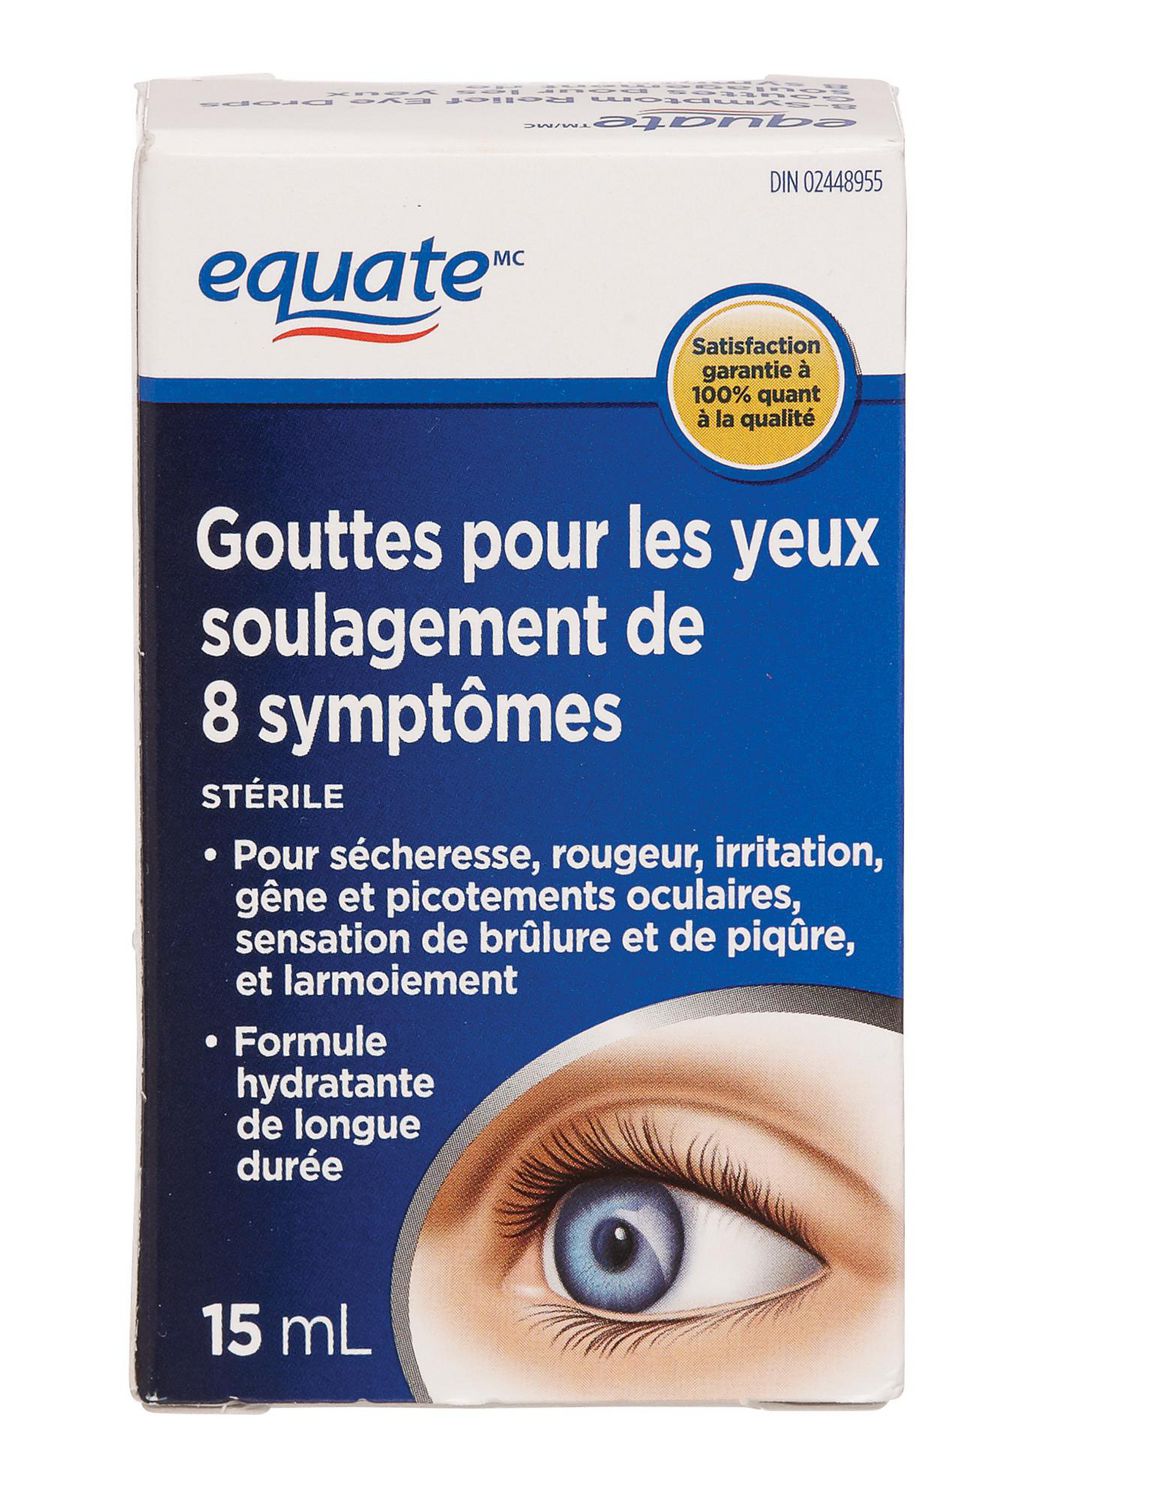 Gouttes pour les yeux Equate pour soulagement de 8 symptômes 15 ml